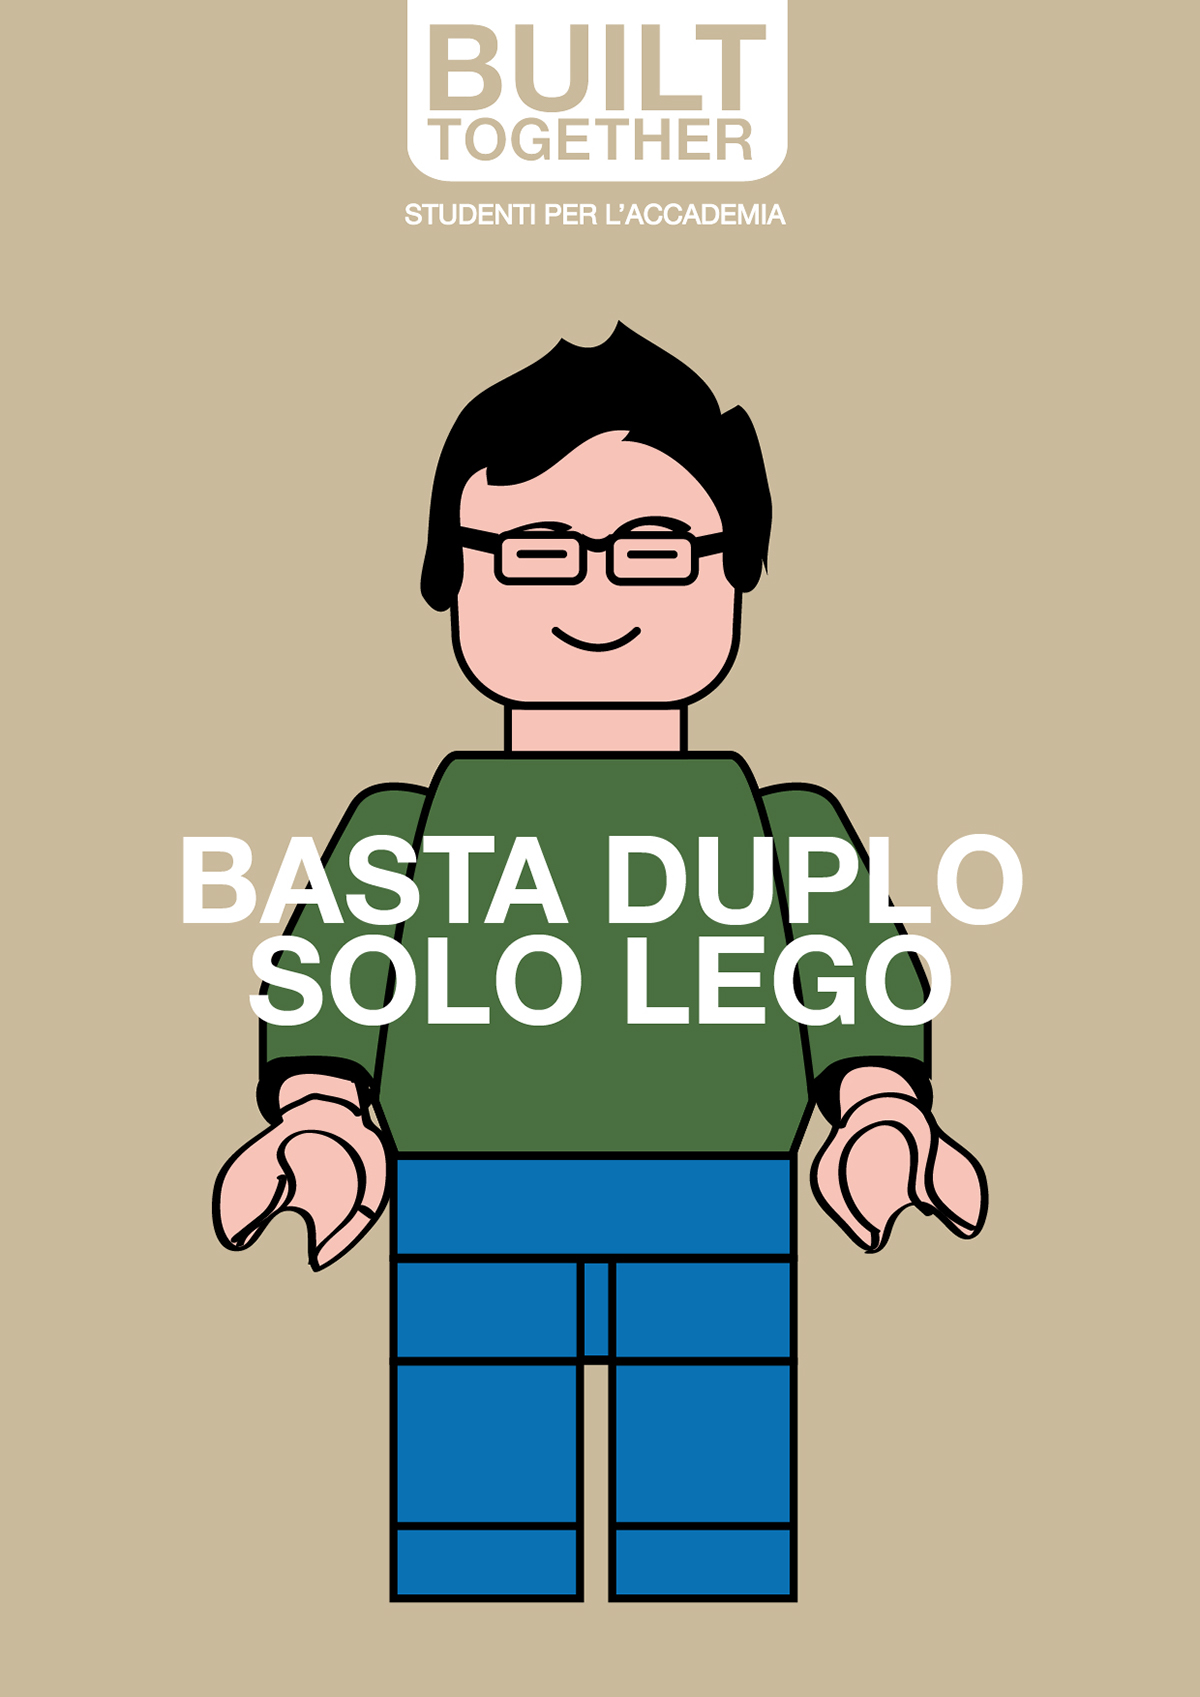 LEGO Character people politics accademia brera Mattoncino costruire